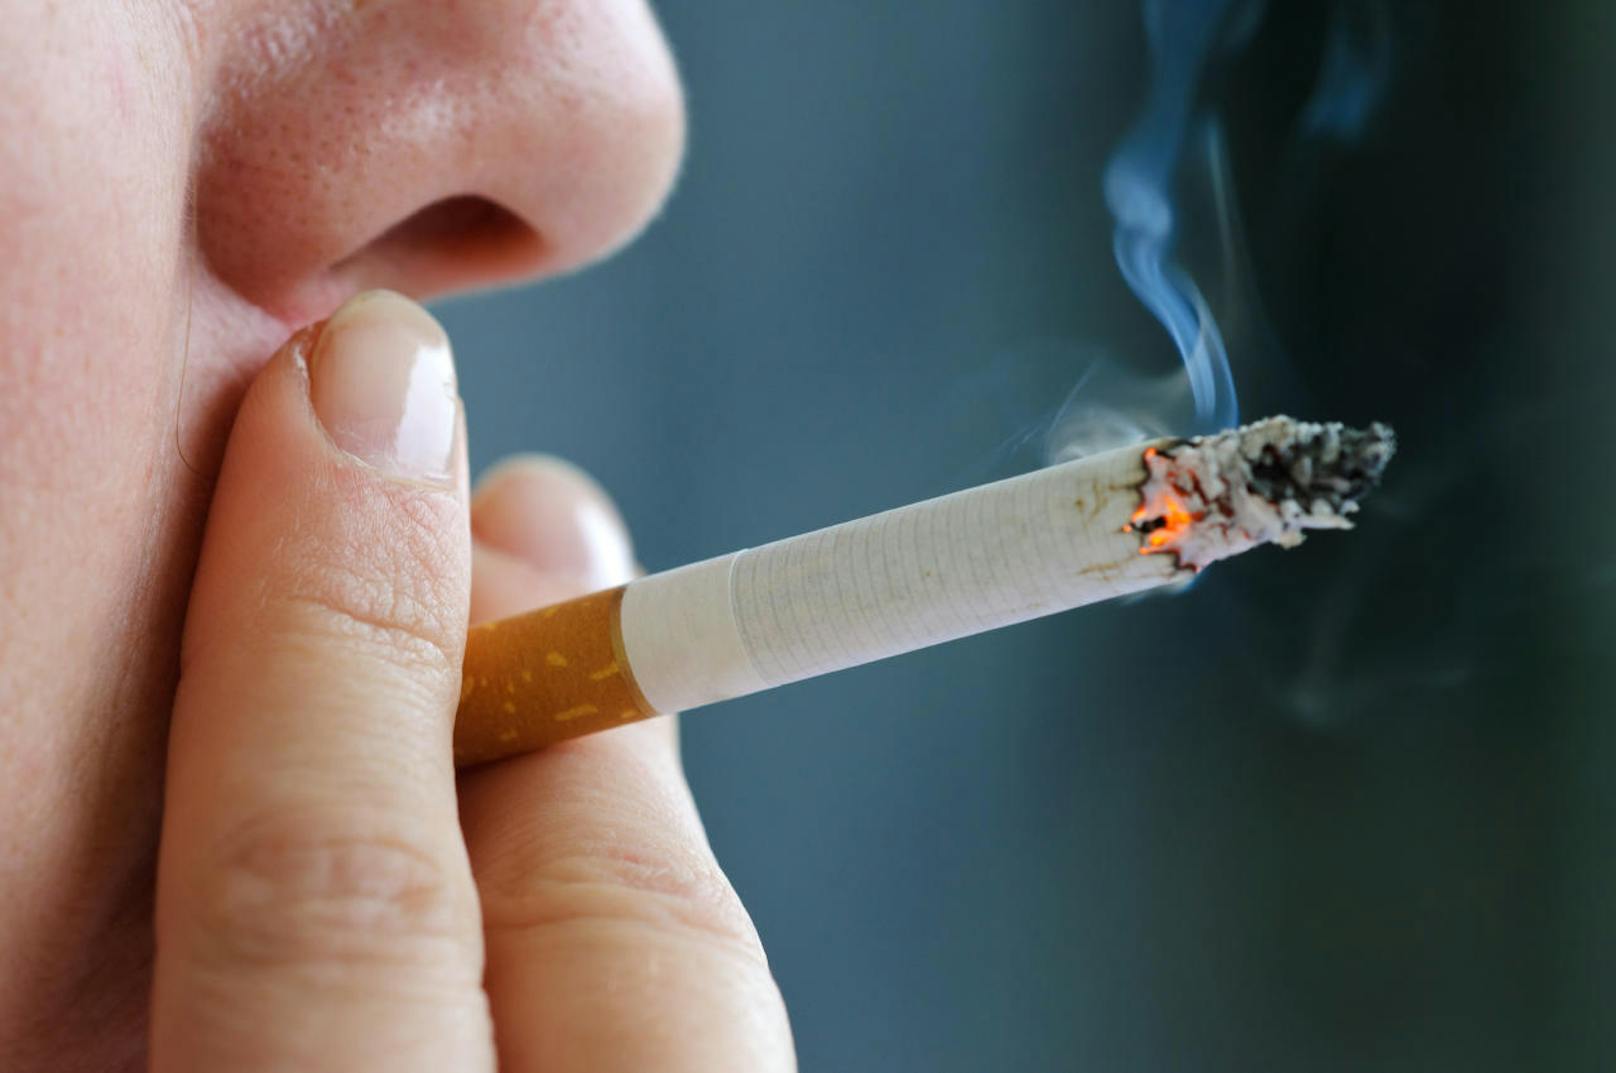 Rauchverbot soll ab 2023 ausgeweitet werden